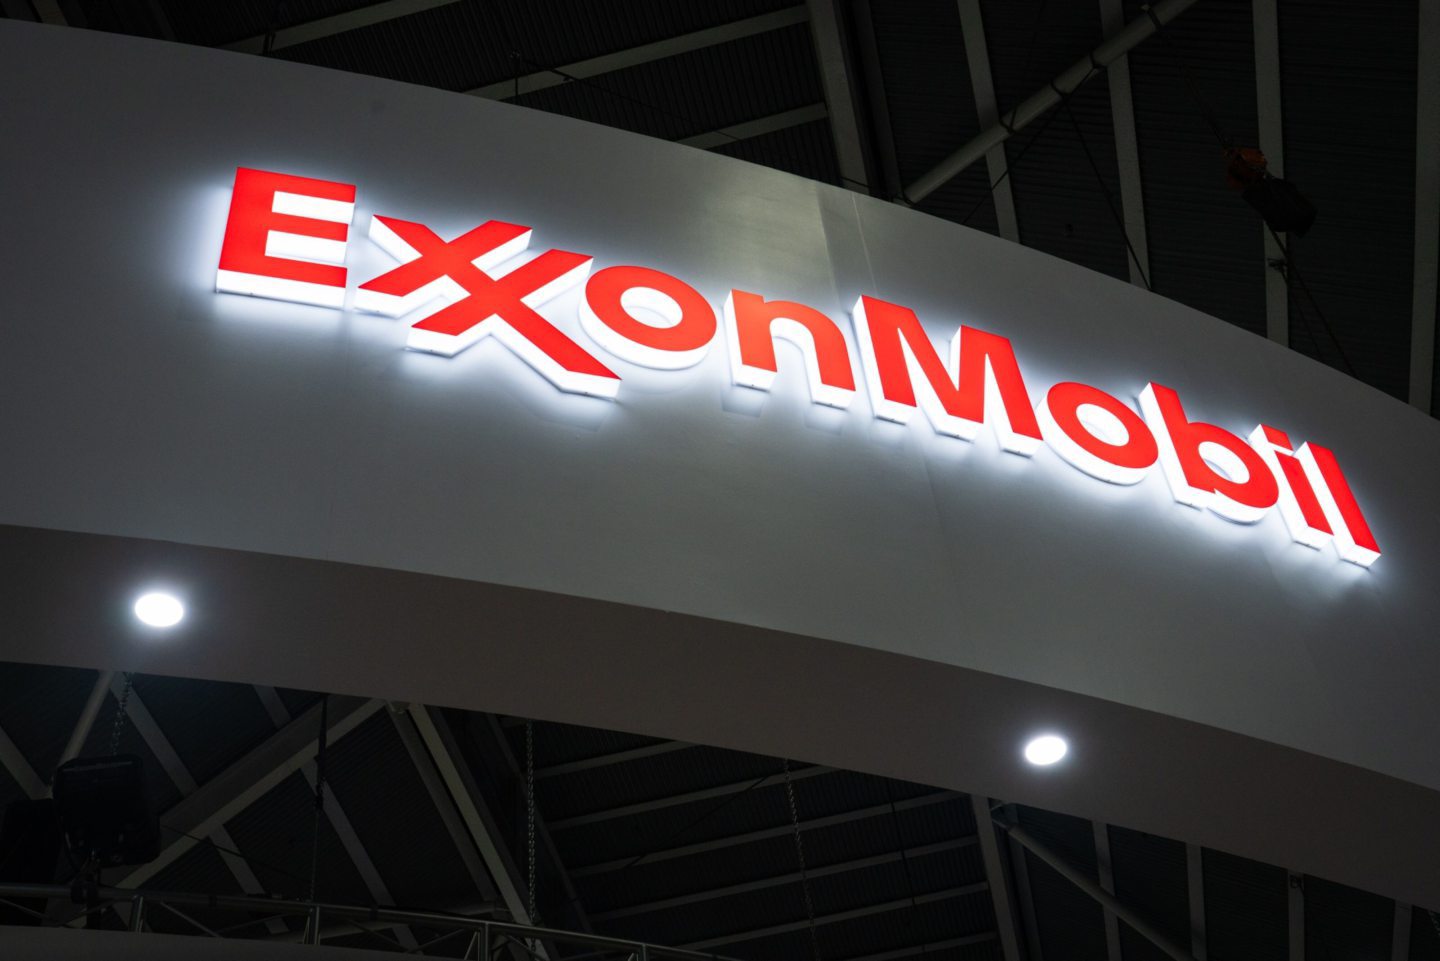 Exxon pioneer